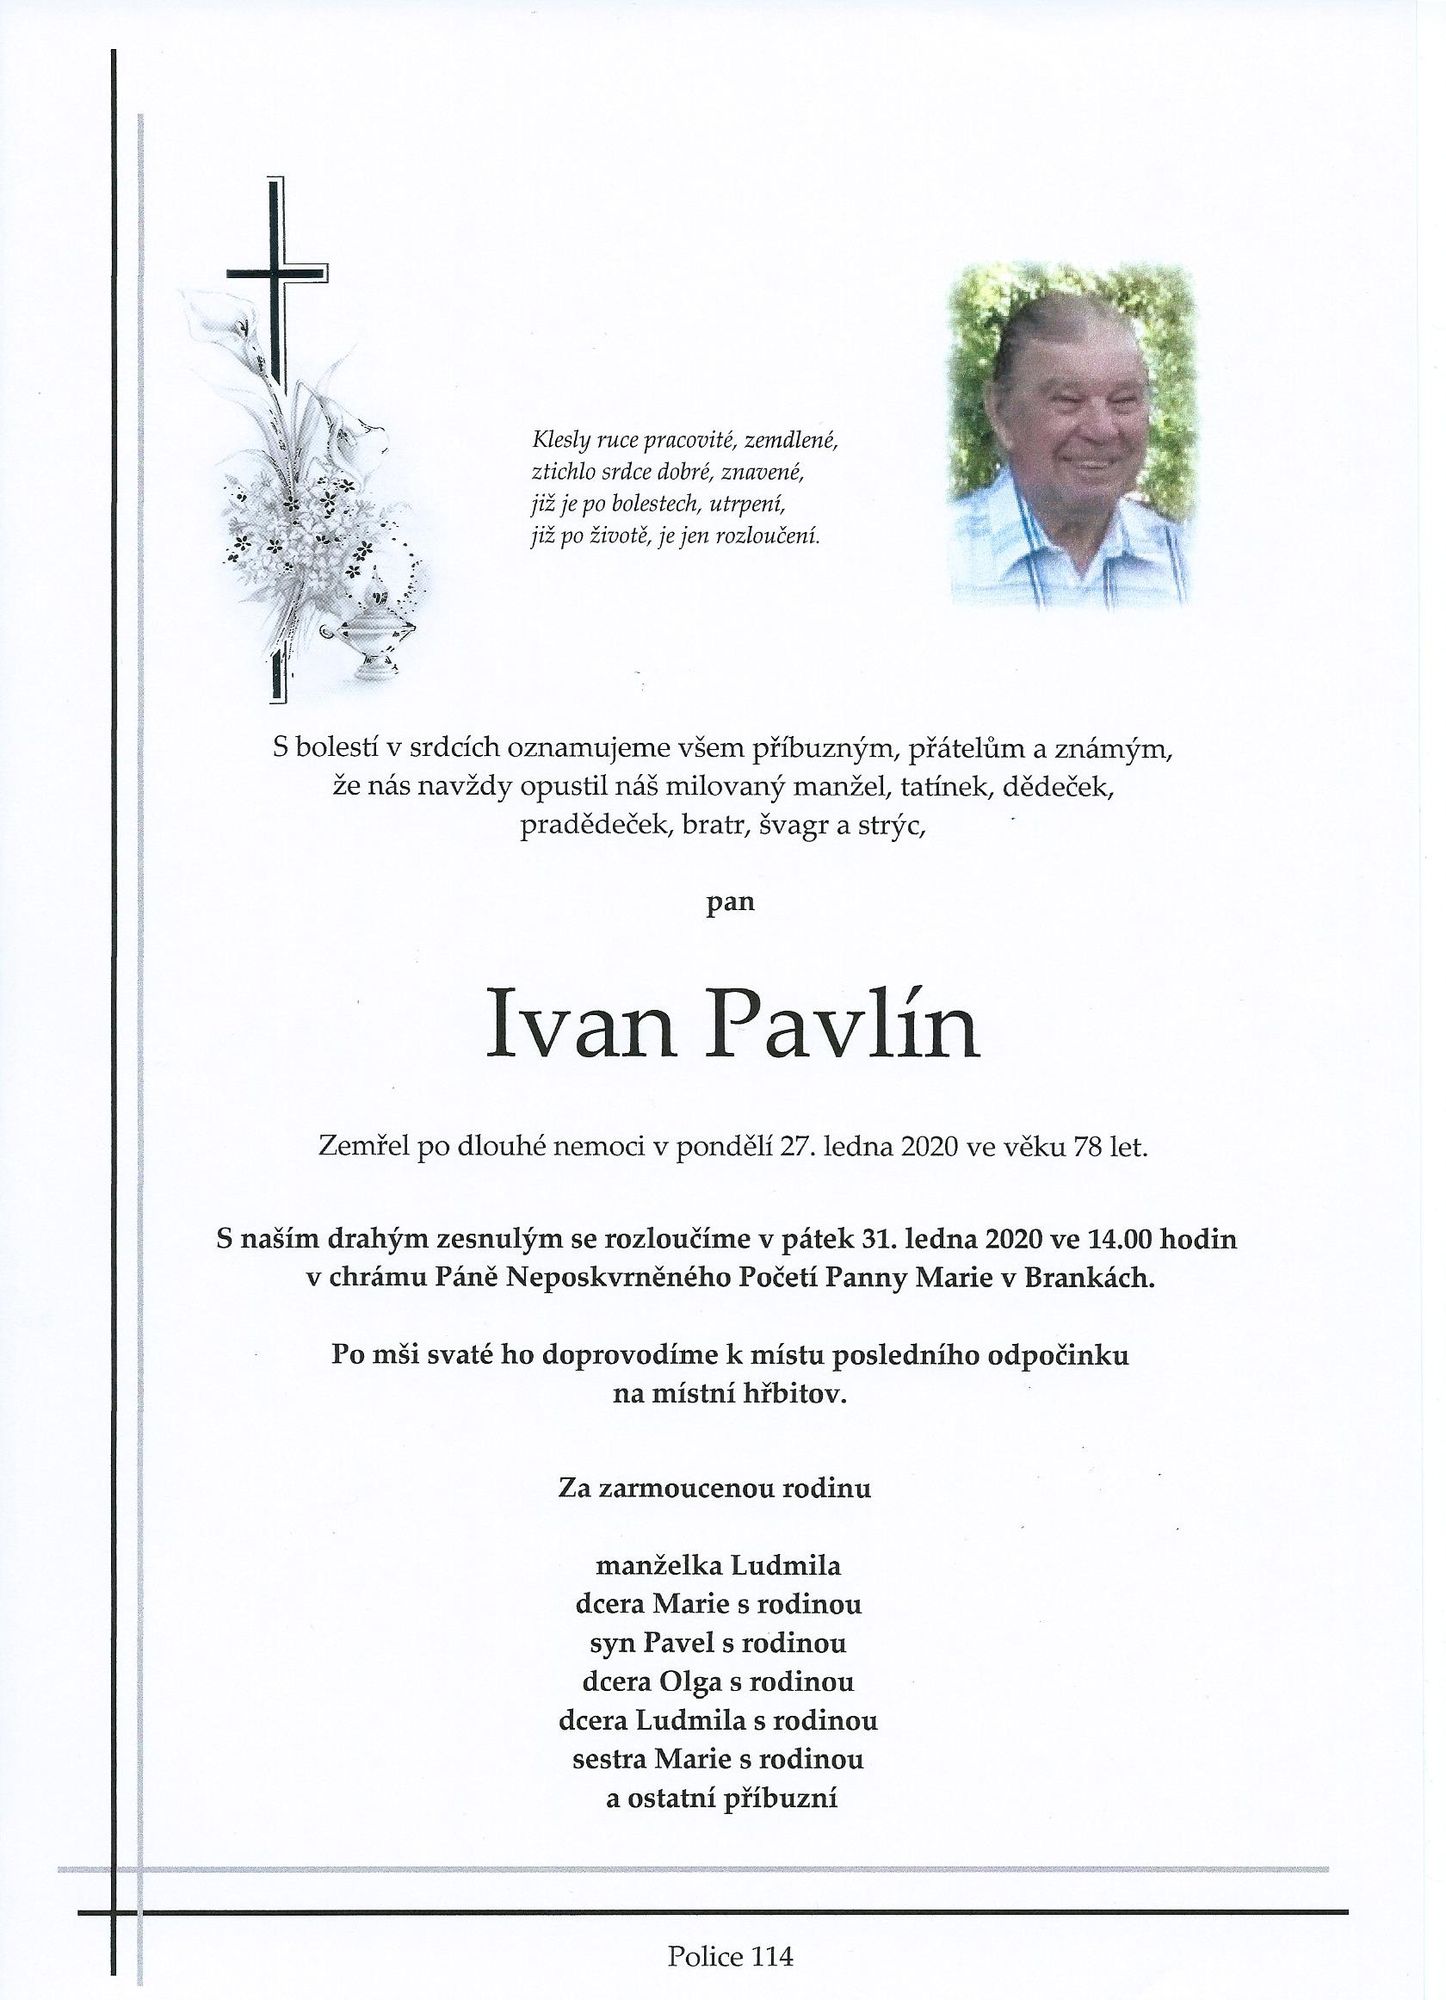 Ivan Pavlín